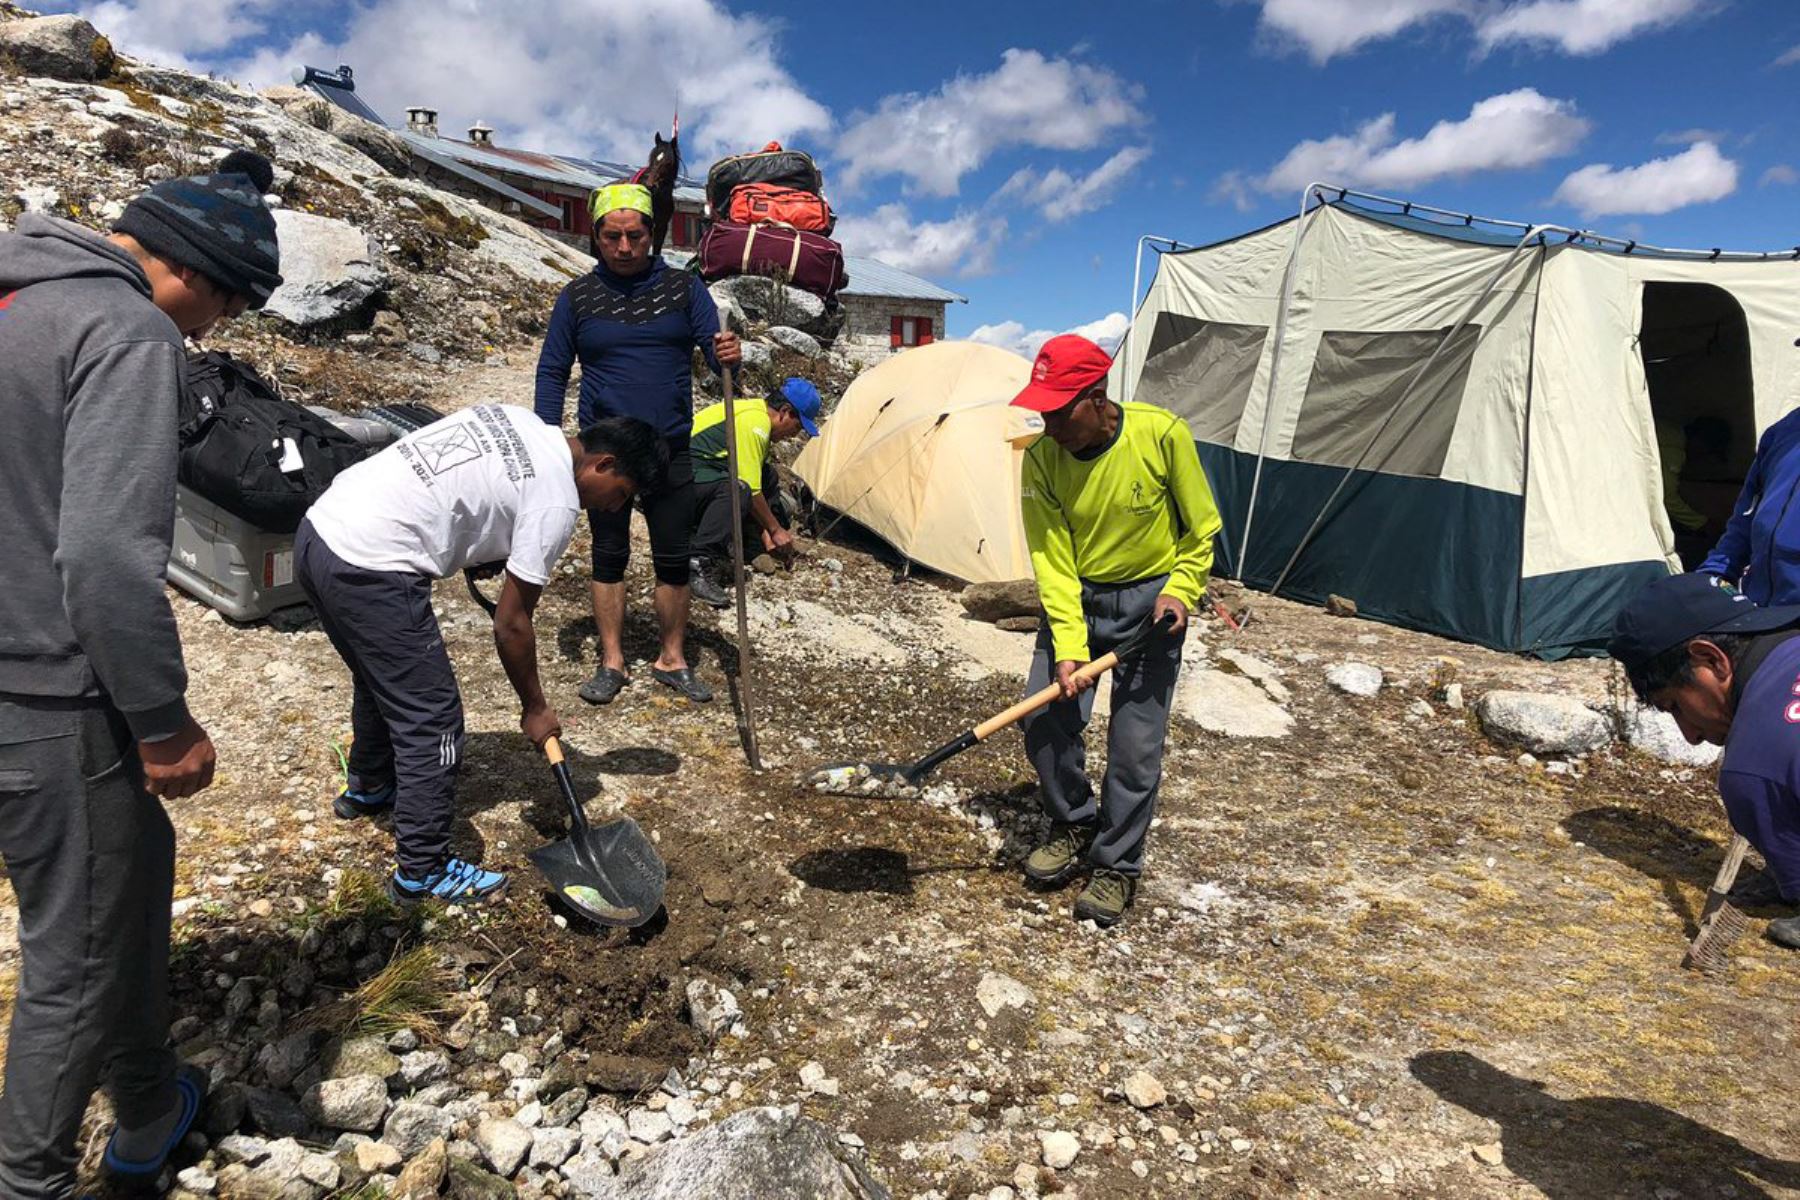 Expedición científica ya se encuentra en el campo base del nevado Huascarán y pronto iniciará ascenso a la cumbre donde estudiará glaciar. Foto: Gisela Orjeda/Twitter